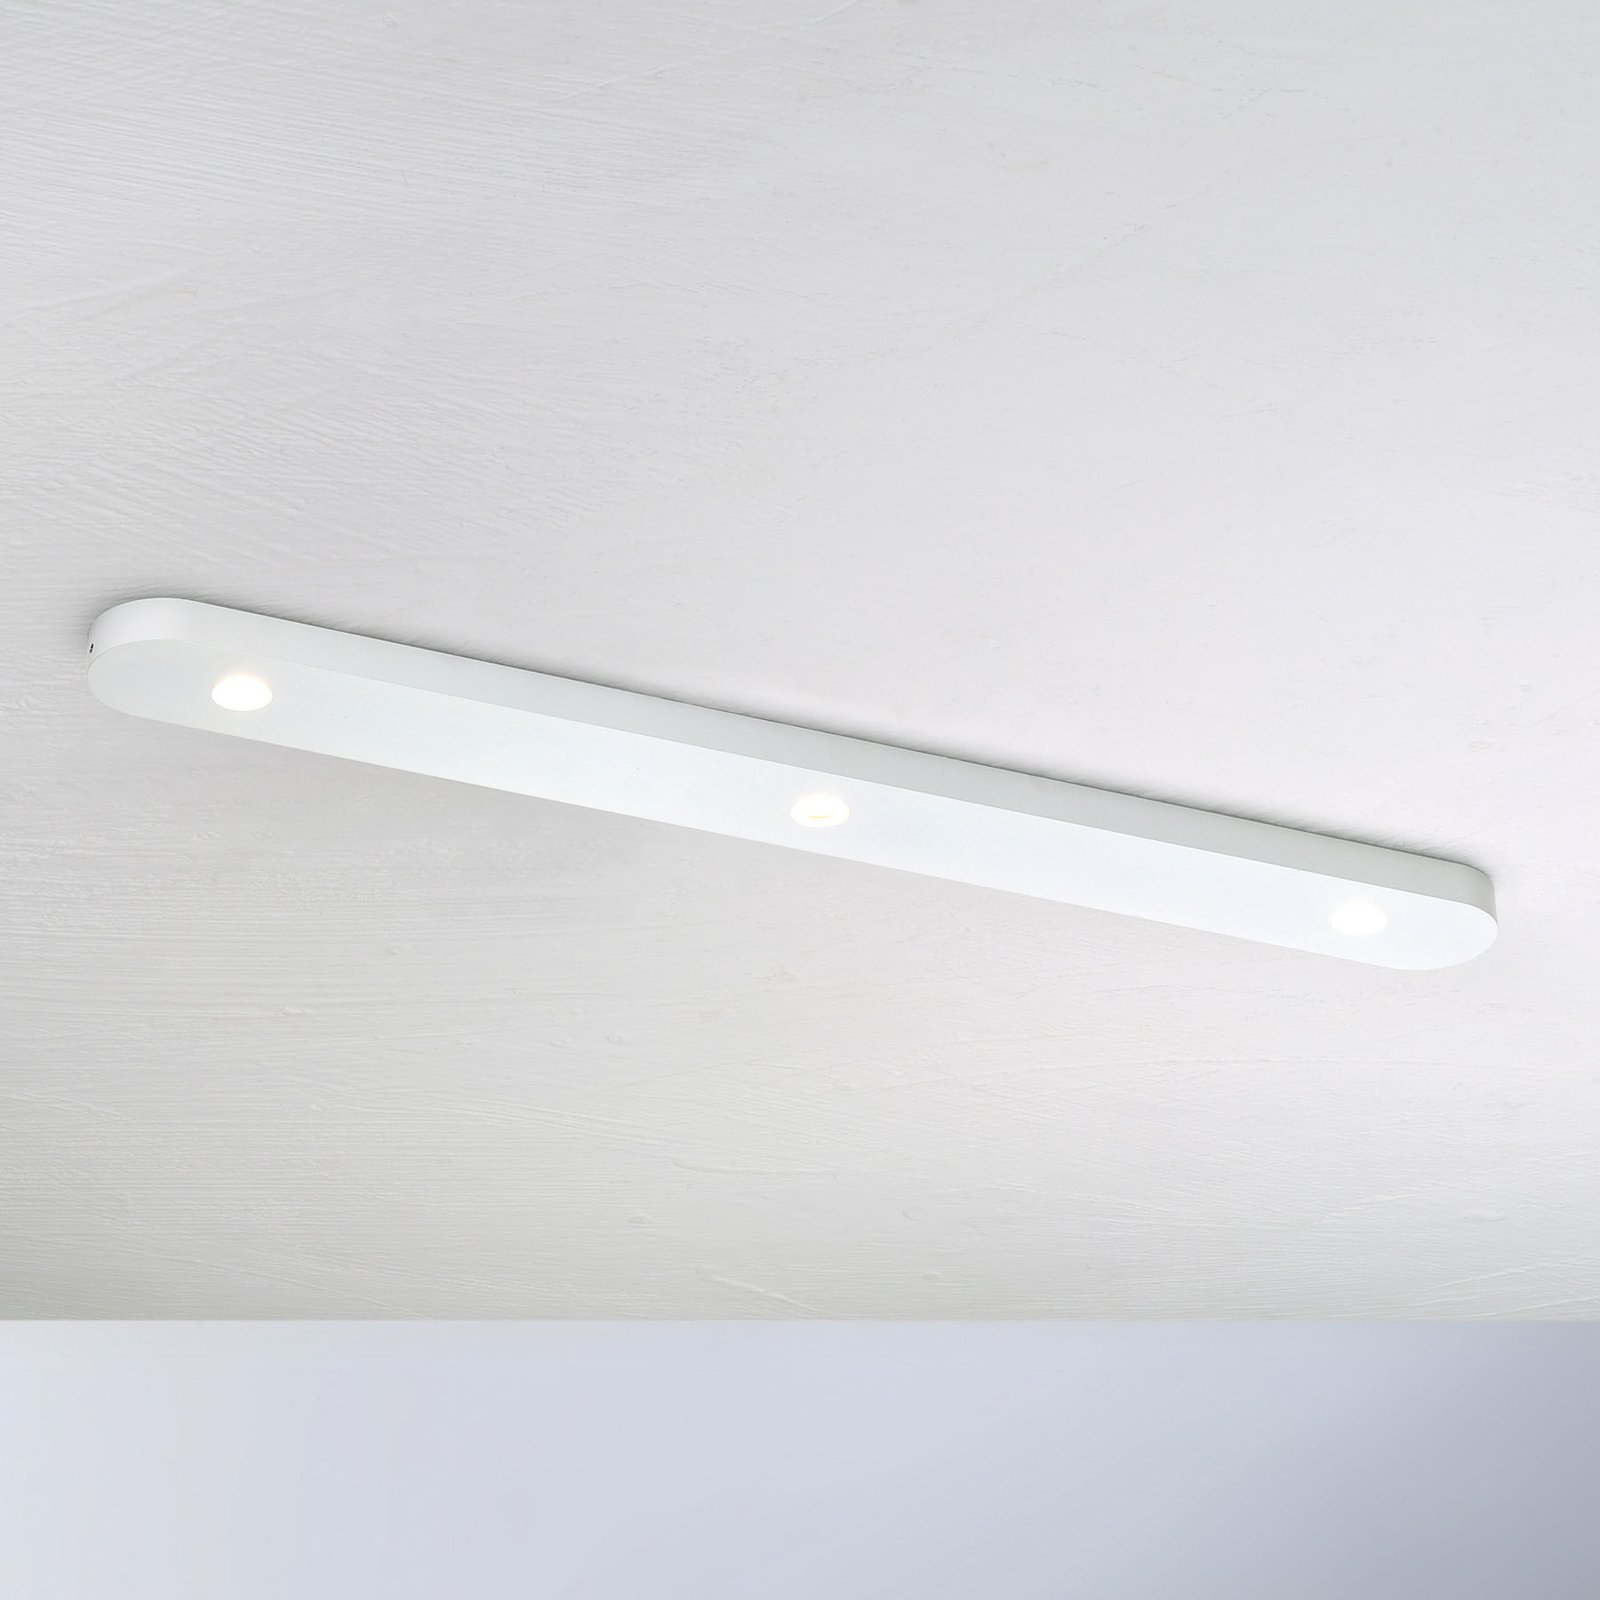 Bopp Close plafonnier LED à 3 lampes, blanc